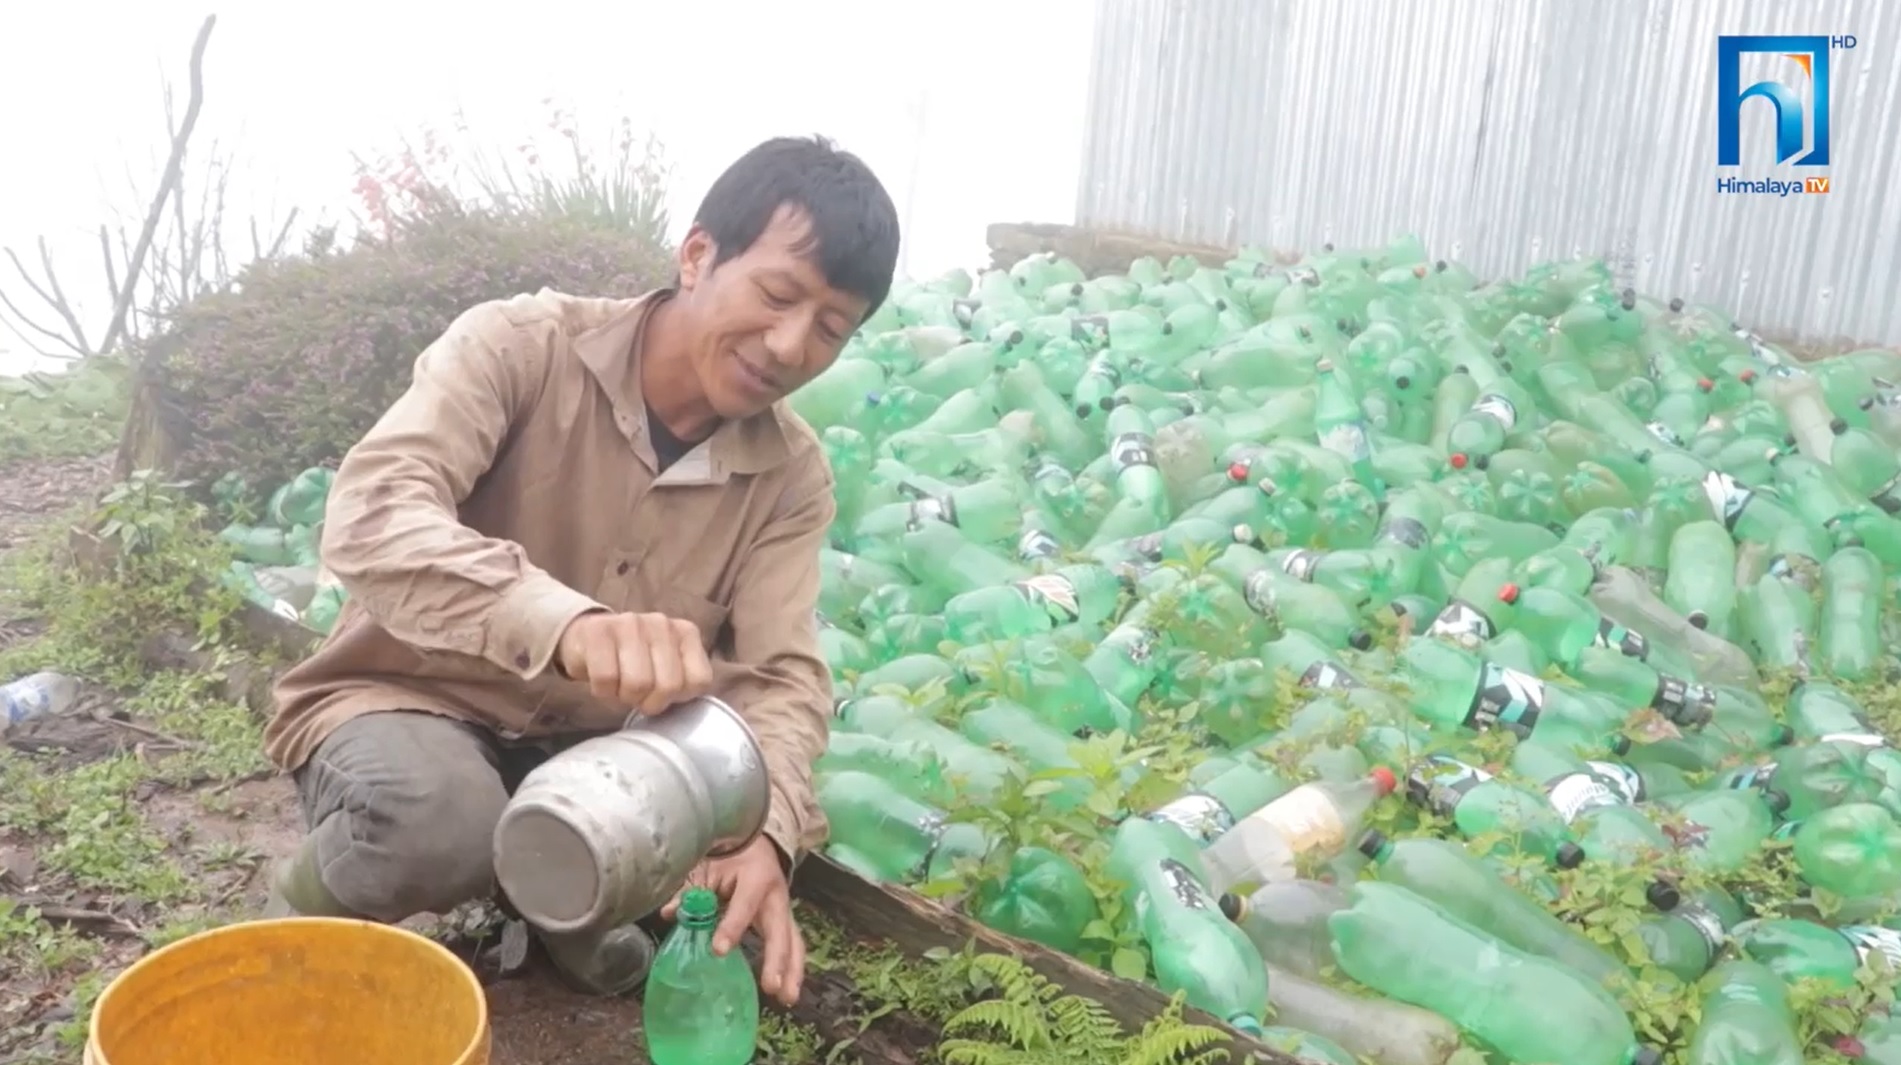 खानेपानीको हाहाकार : बर्खाको पानी जम्मा गरेर ६ महिना गुजारा टार्न बाध्य (भिडियो रिपोर्टसहित)